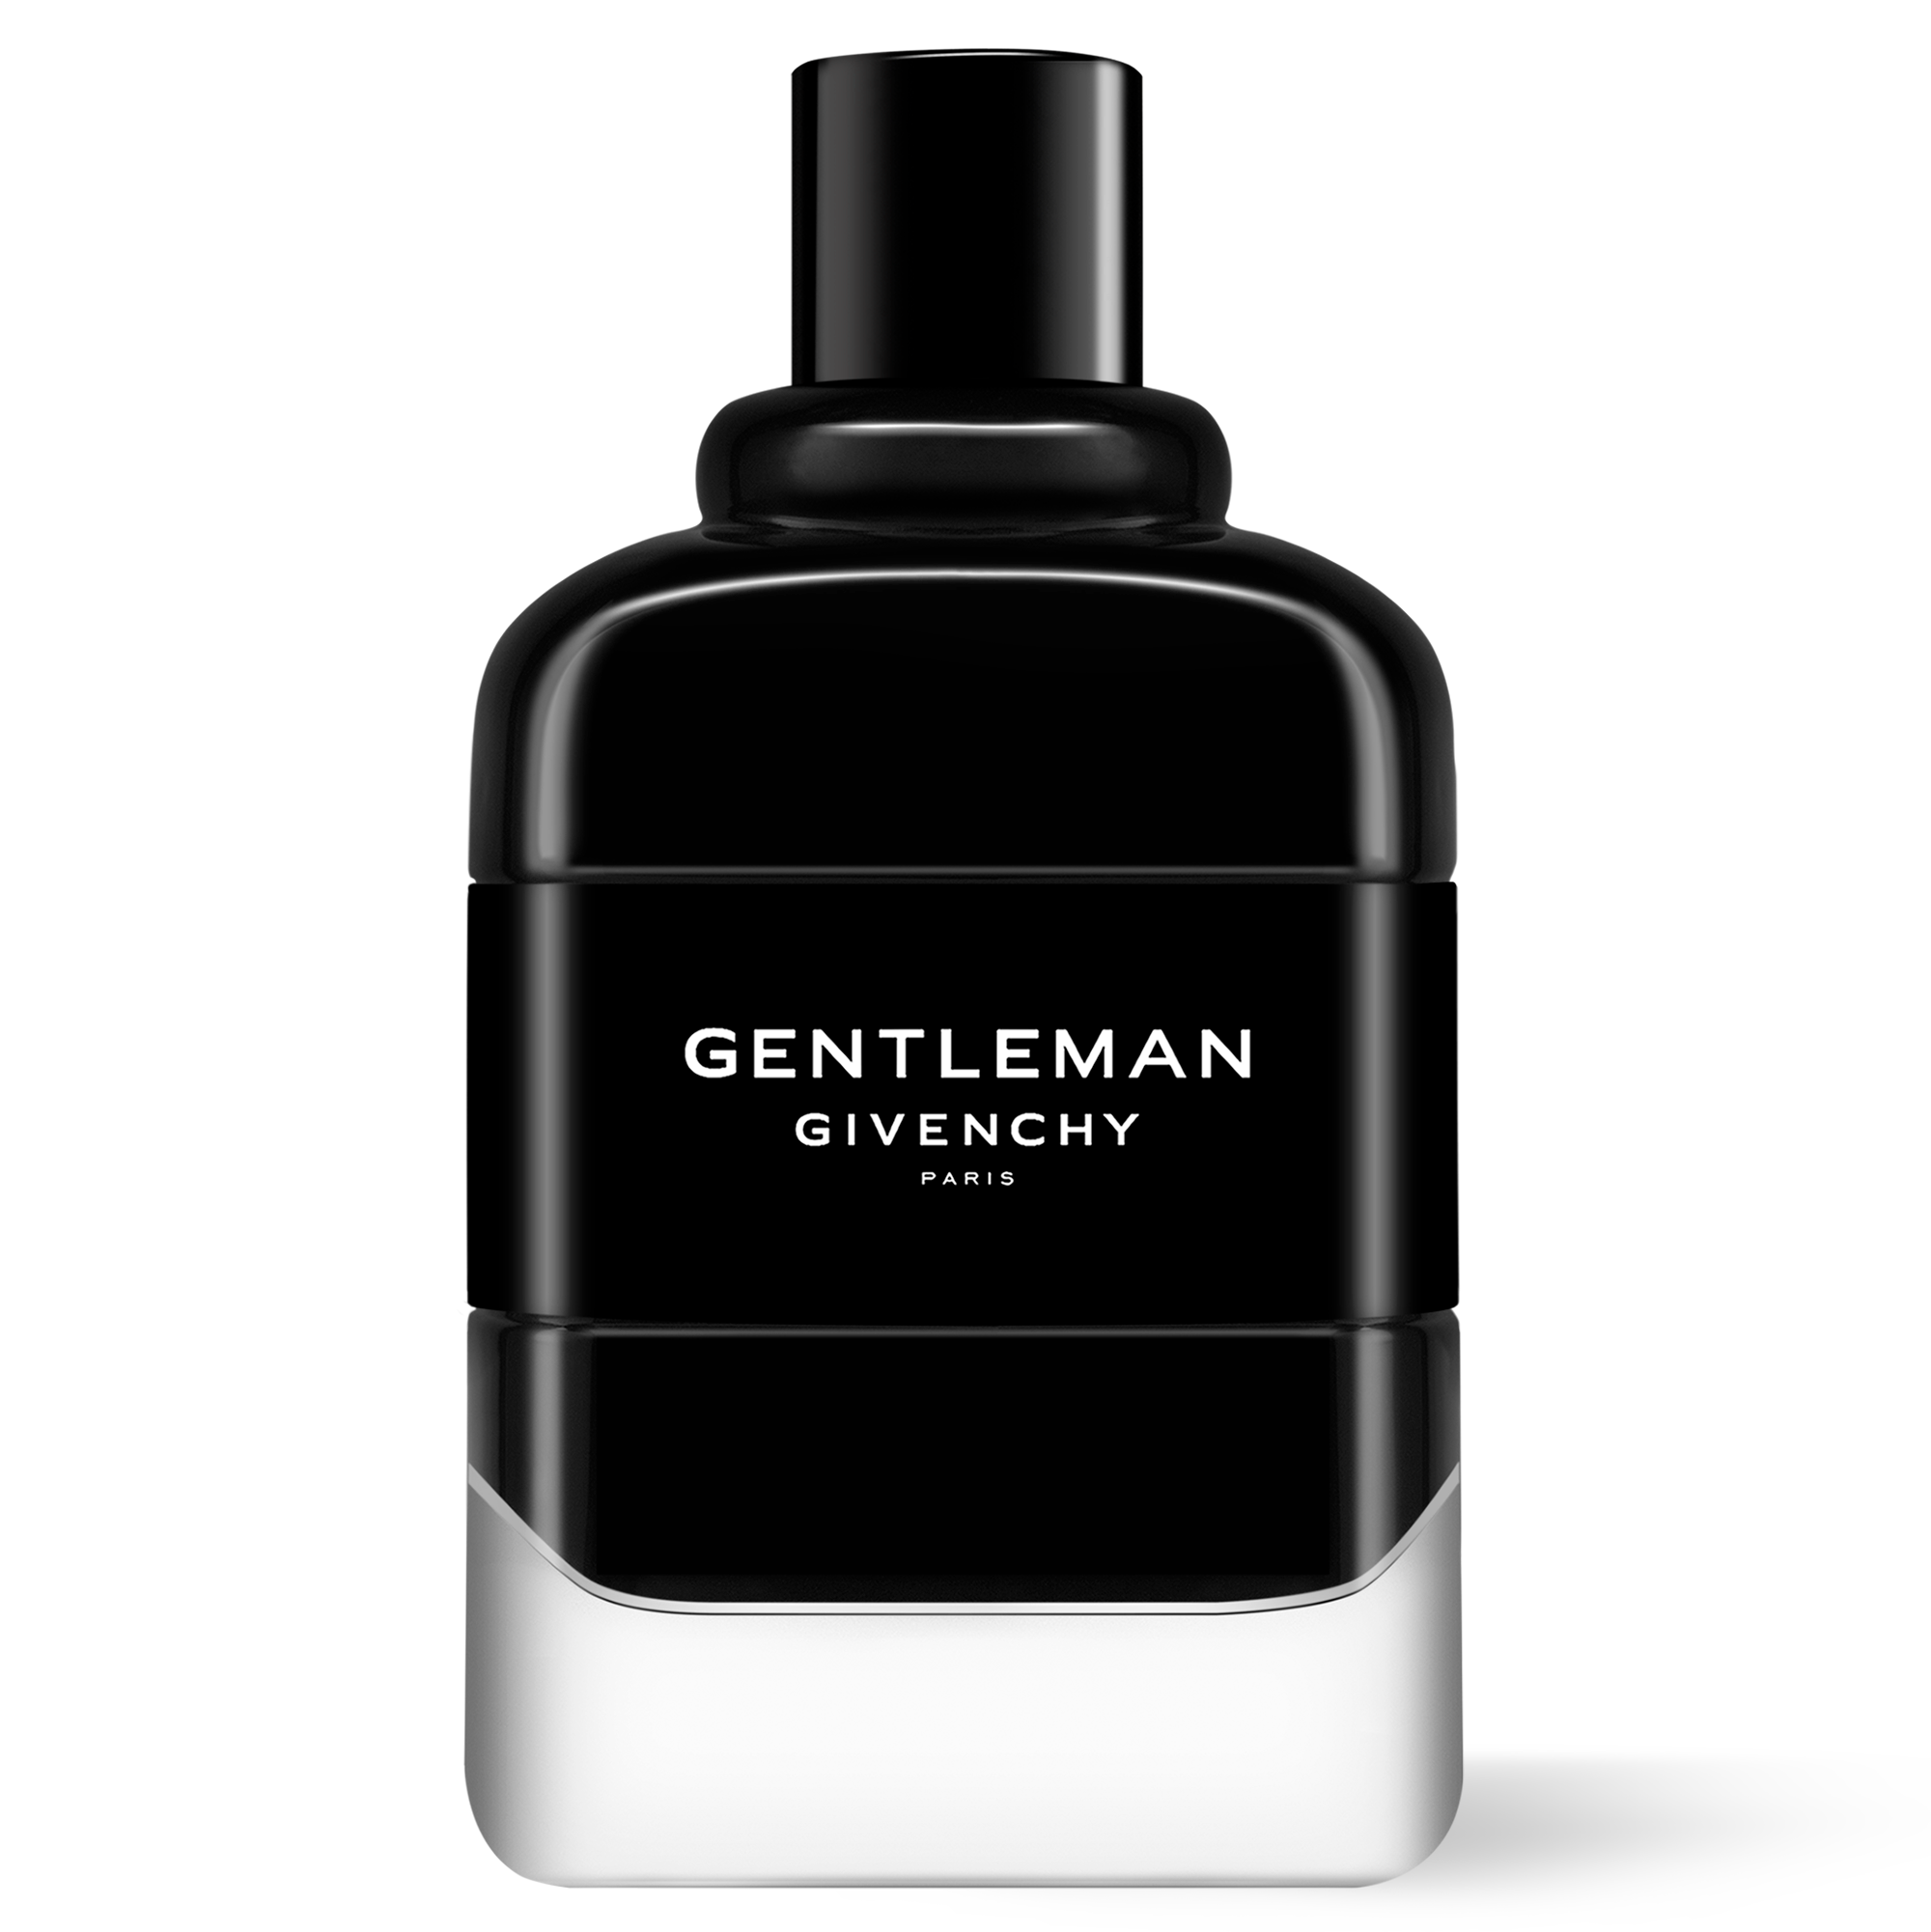 gentleman men perfume